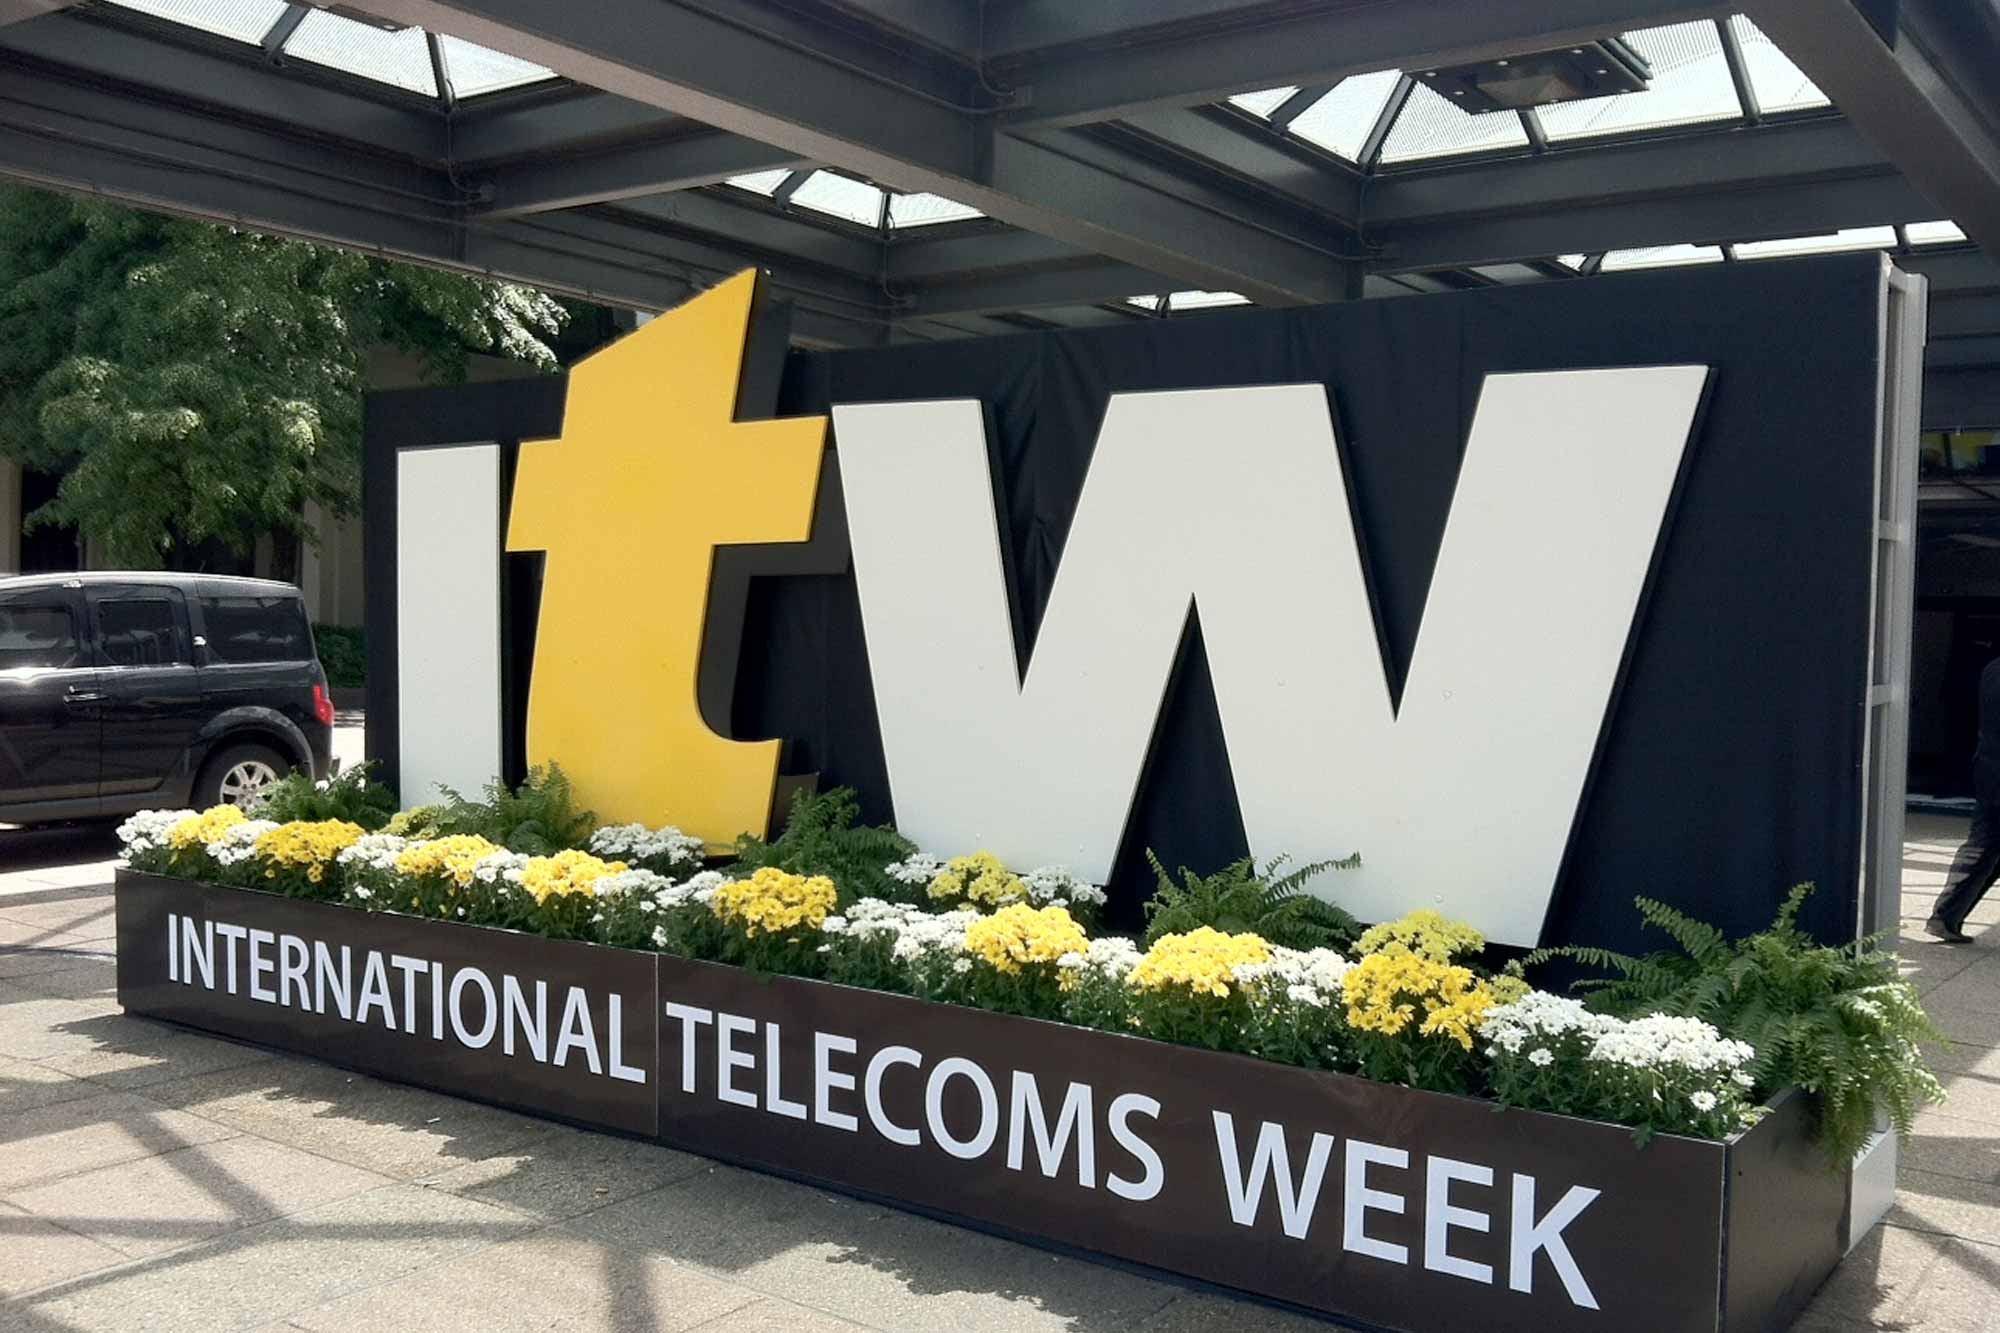 International Telecoms Week 2015